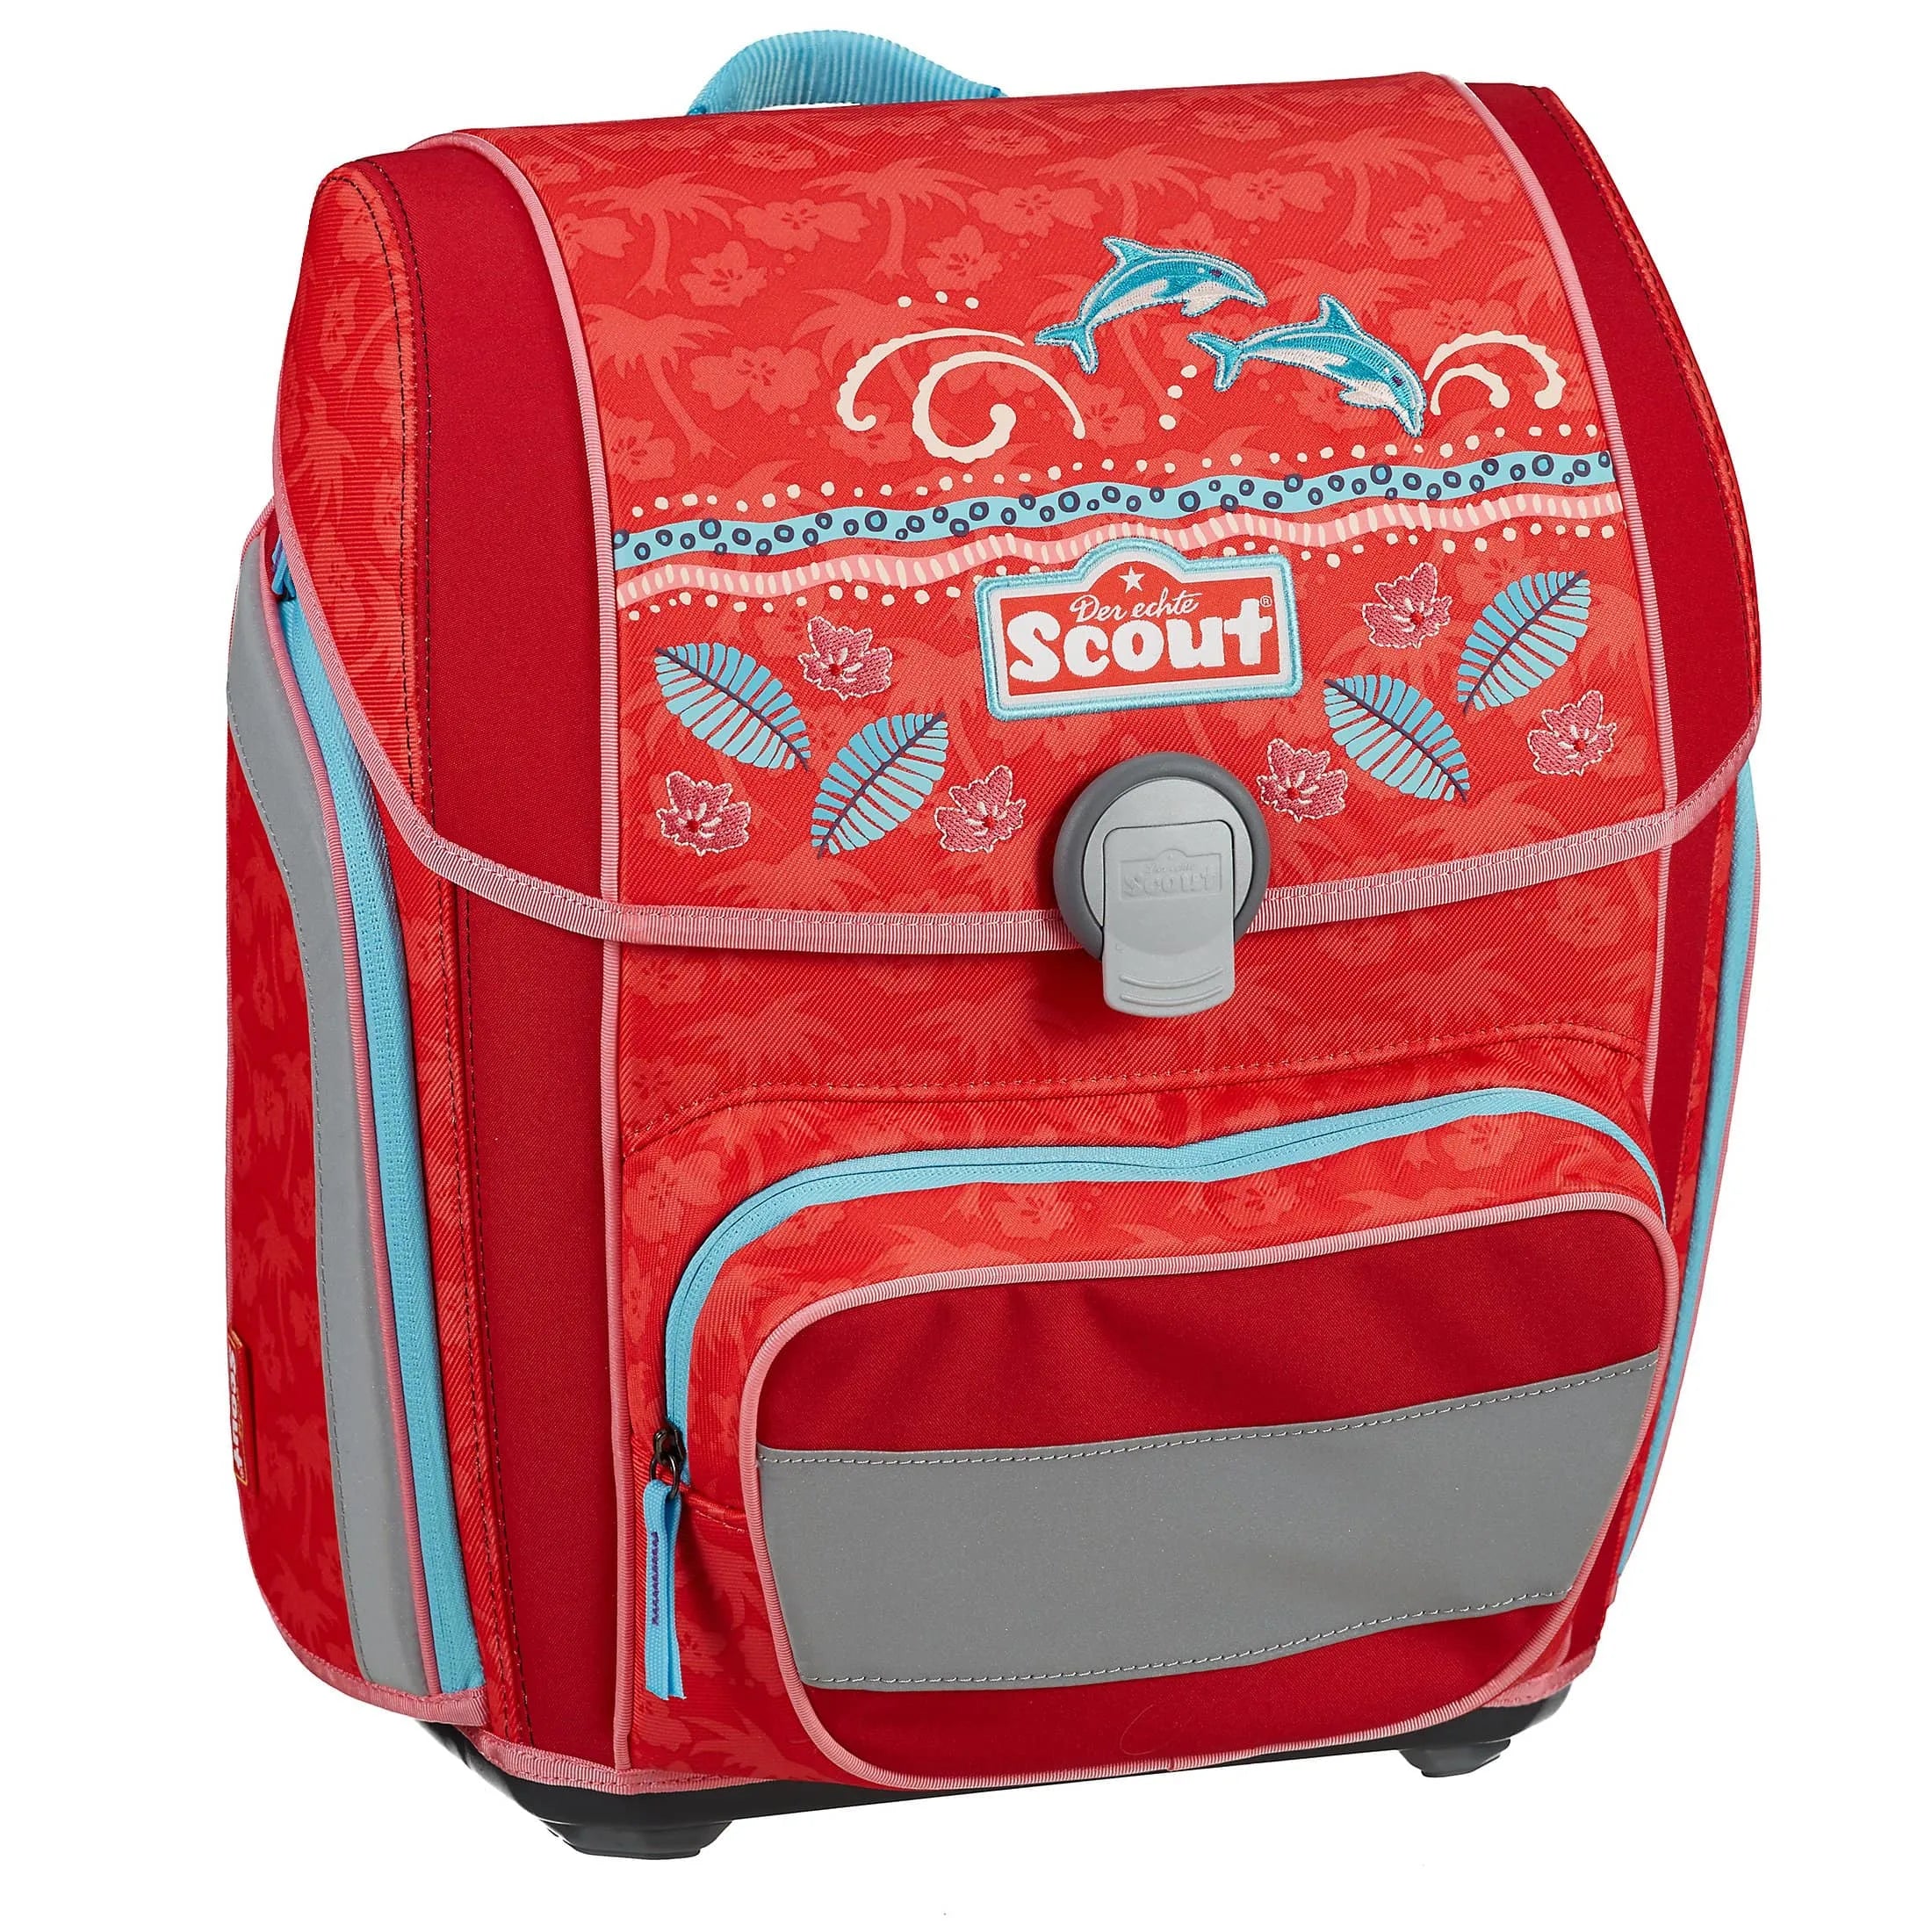 Scout Genius Limited Edition 4-piece satchel set - samoa